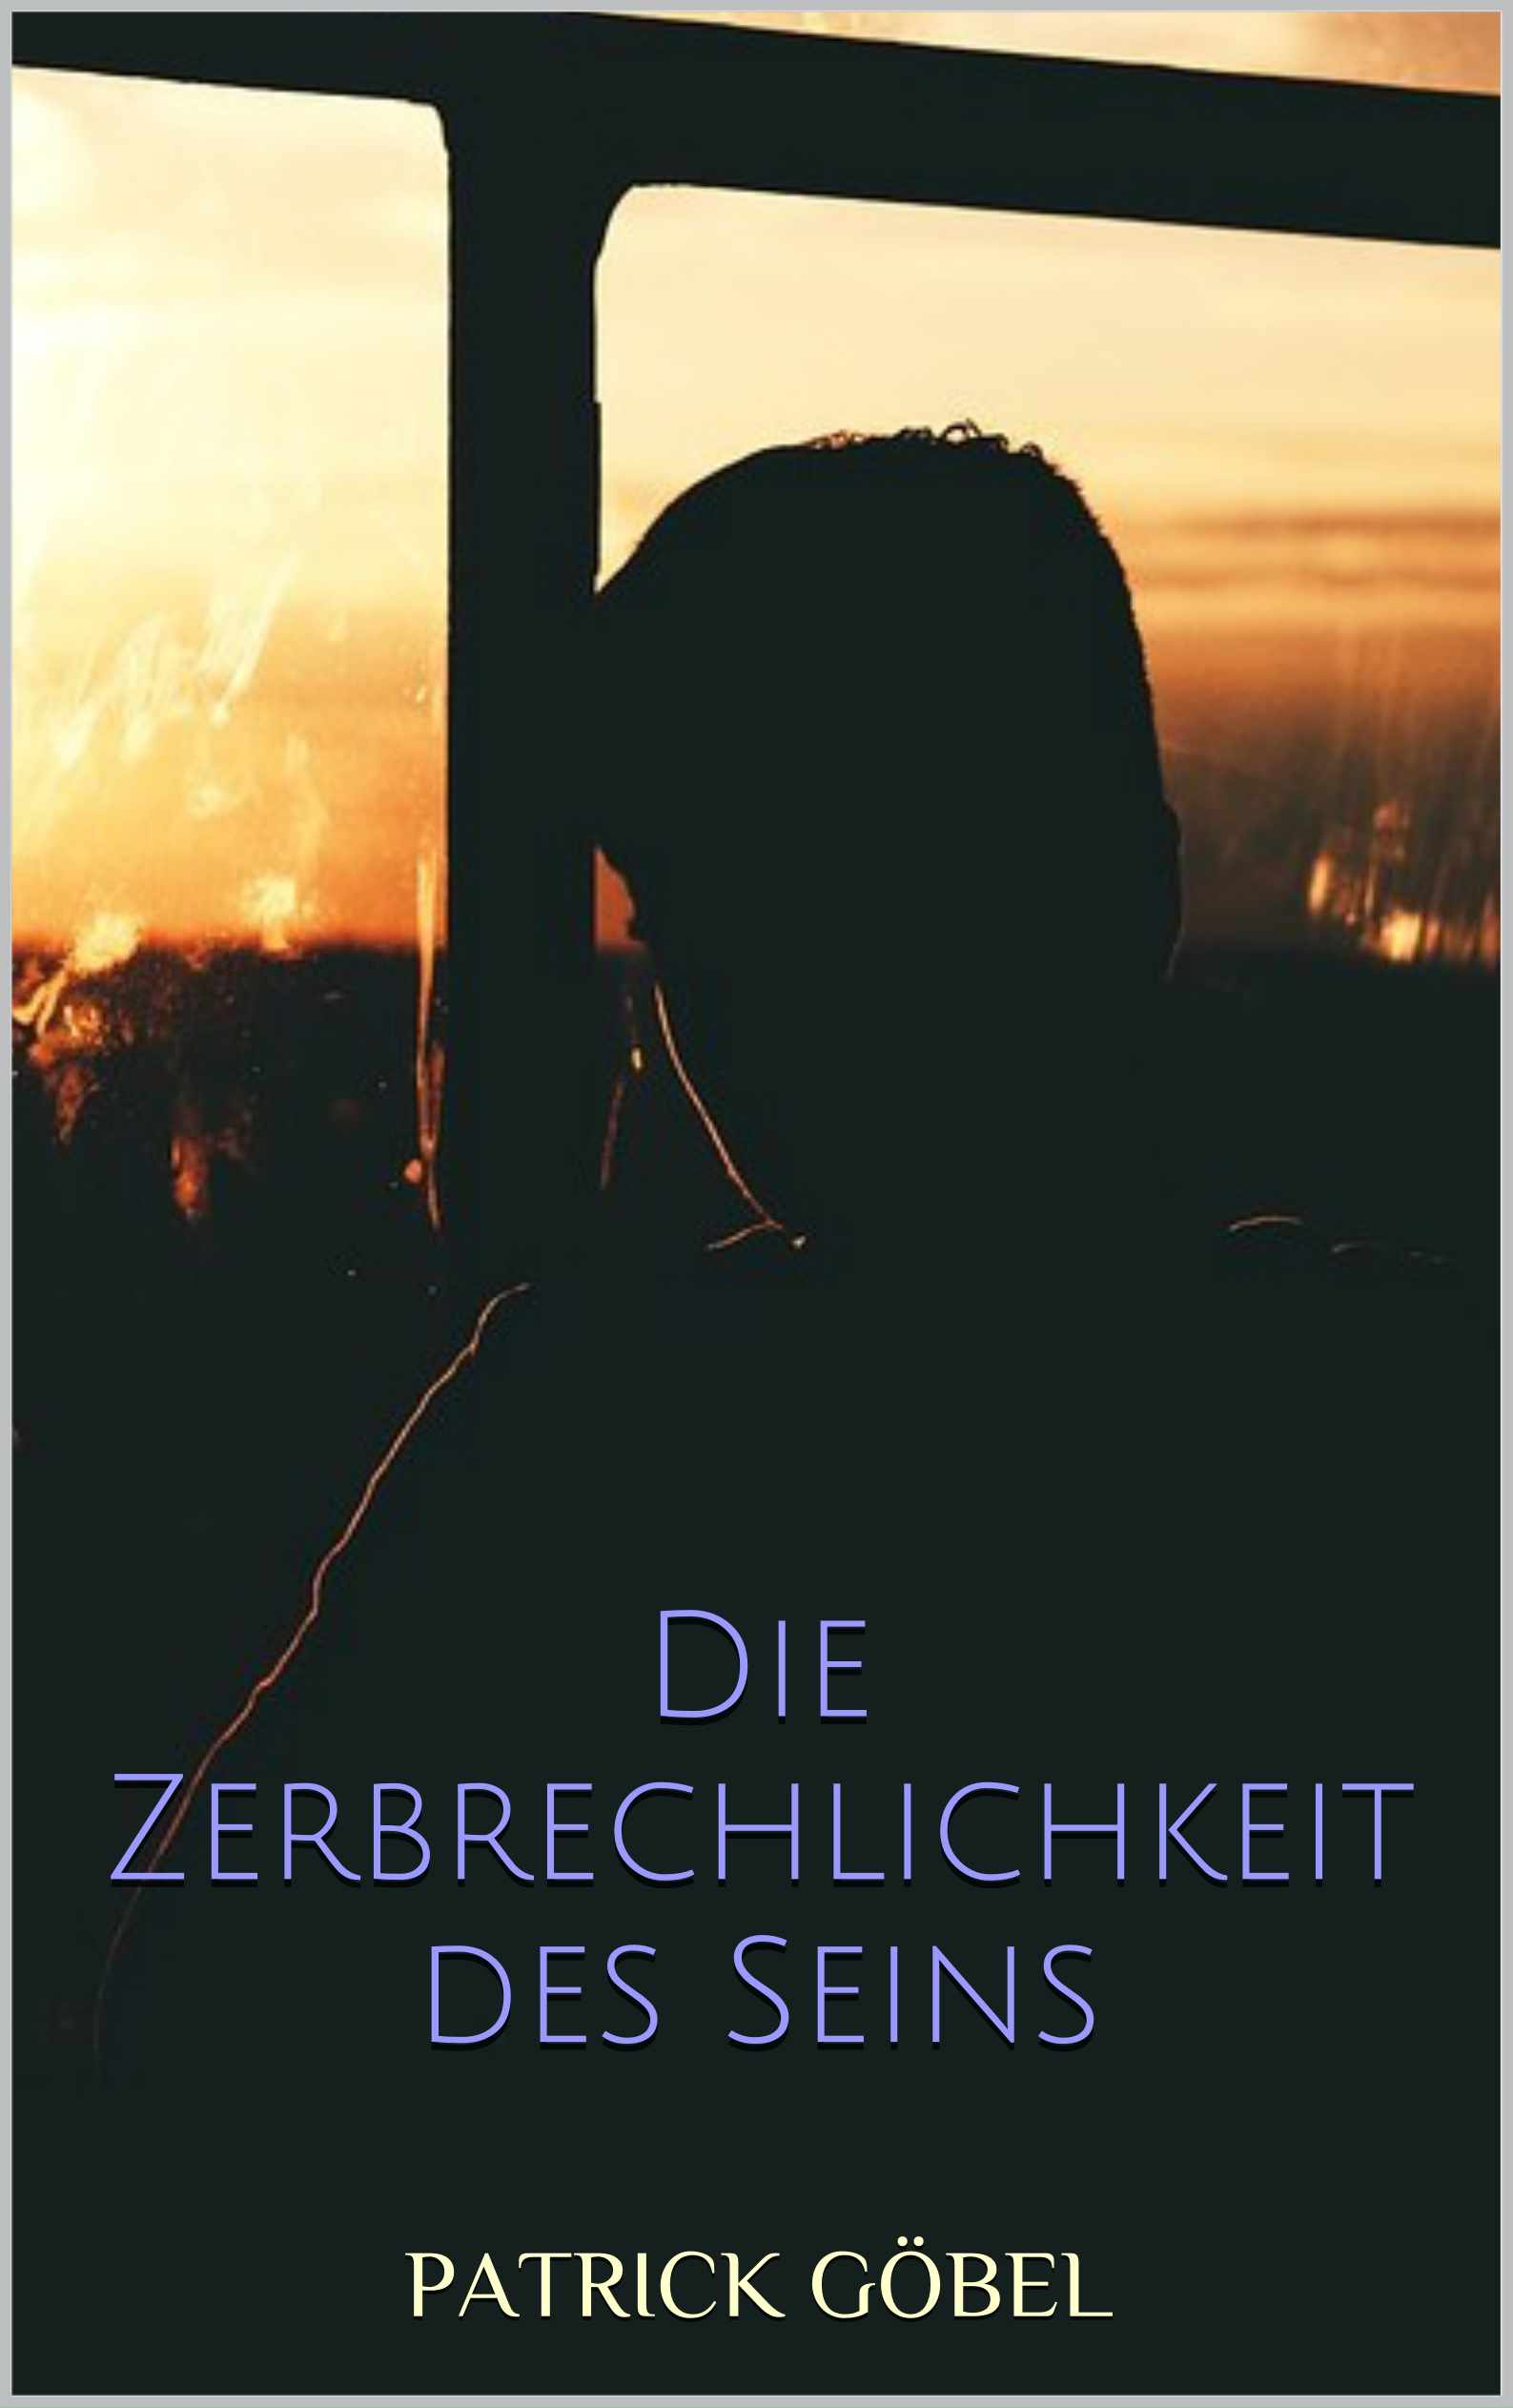 Deutsche-Politik-News.de | Die Zerbrechlichkeit des Seins - Cover. (Copyright: Patrick Gbel) 